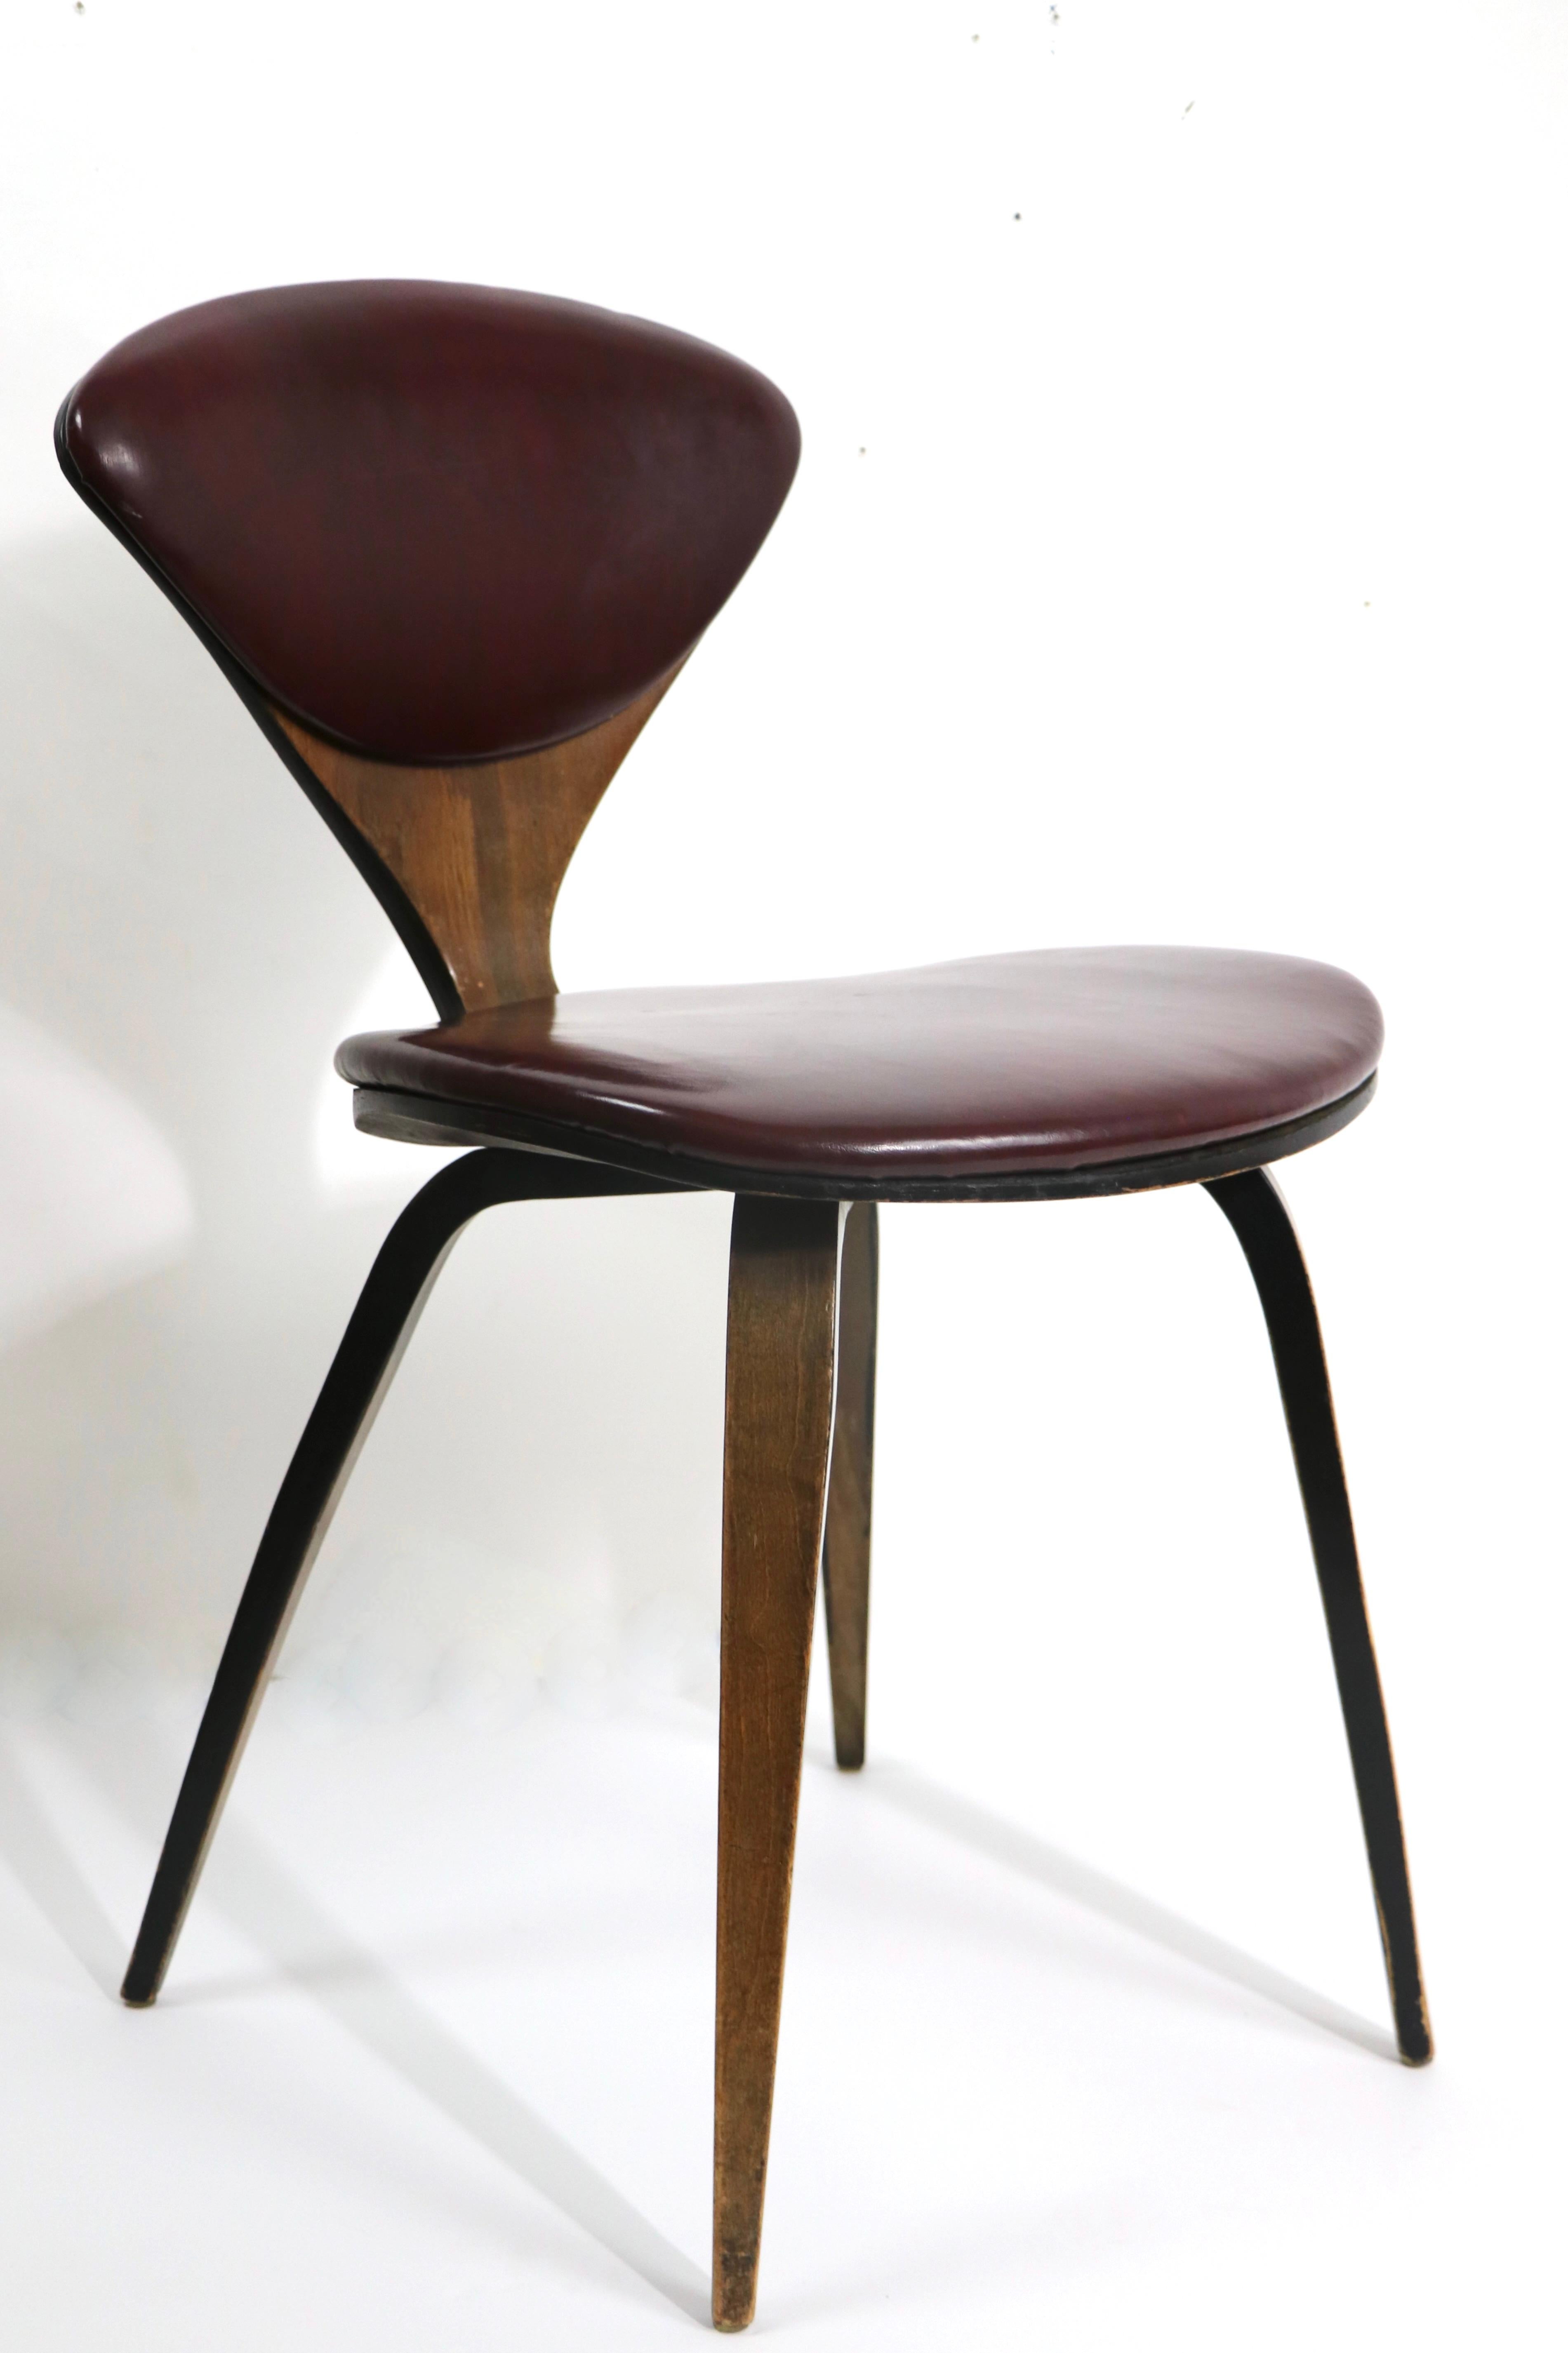 Ikonischer Stuhl aus gebogenem Sperrholz aus der Mitte des Jahrhunderts, entworfen von Norman Cherner für Plycraft, mit originalem Label von Plycraft, datiert 1964. Dieses Exemplar ist in sehr gutem, originalem Zustand und zeigt nur leichte